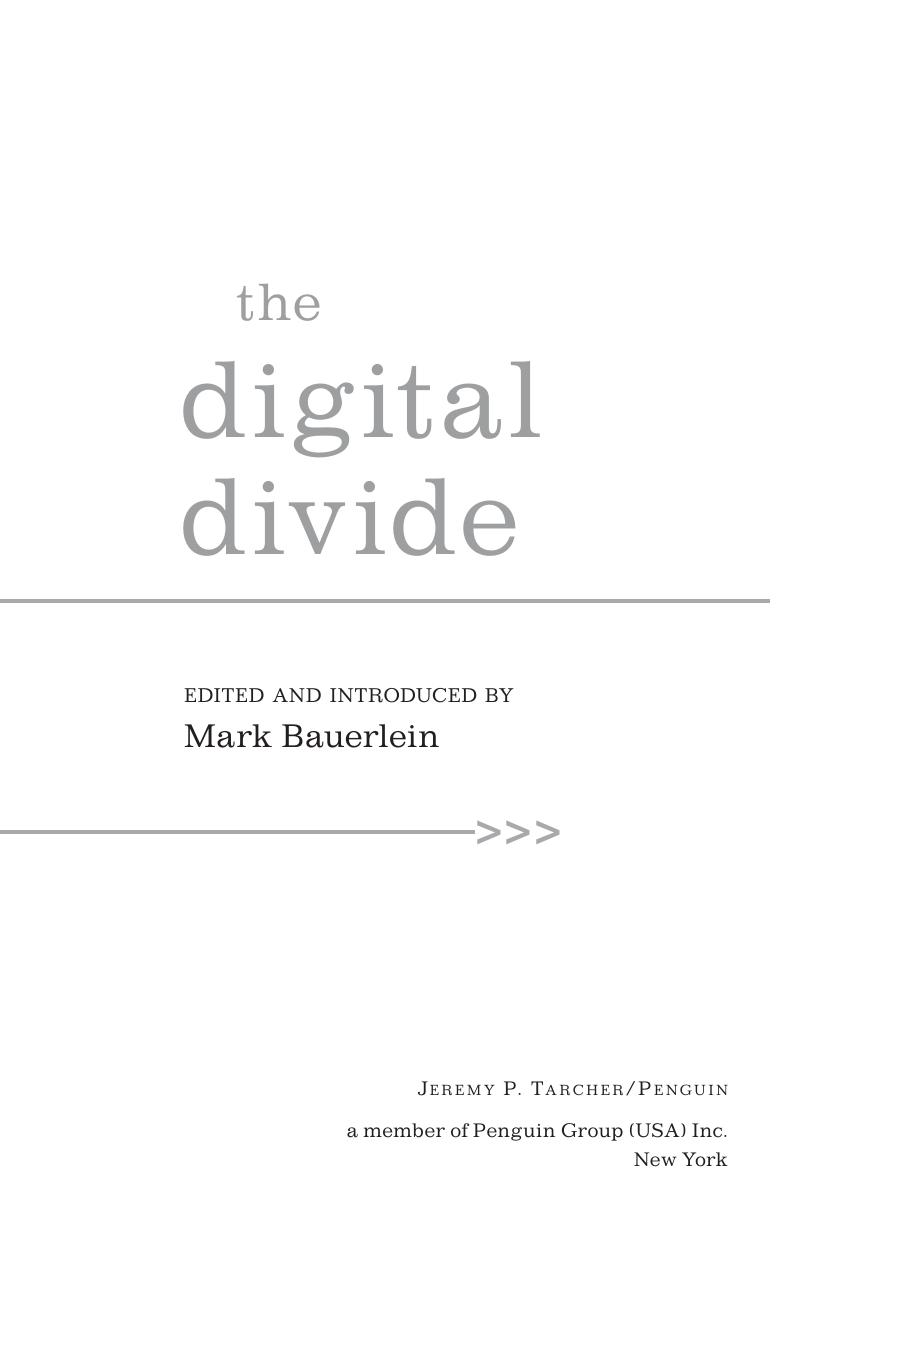 The Digital Divide by Mark Bauerlein